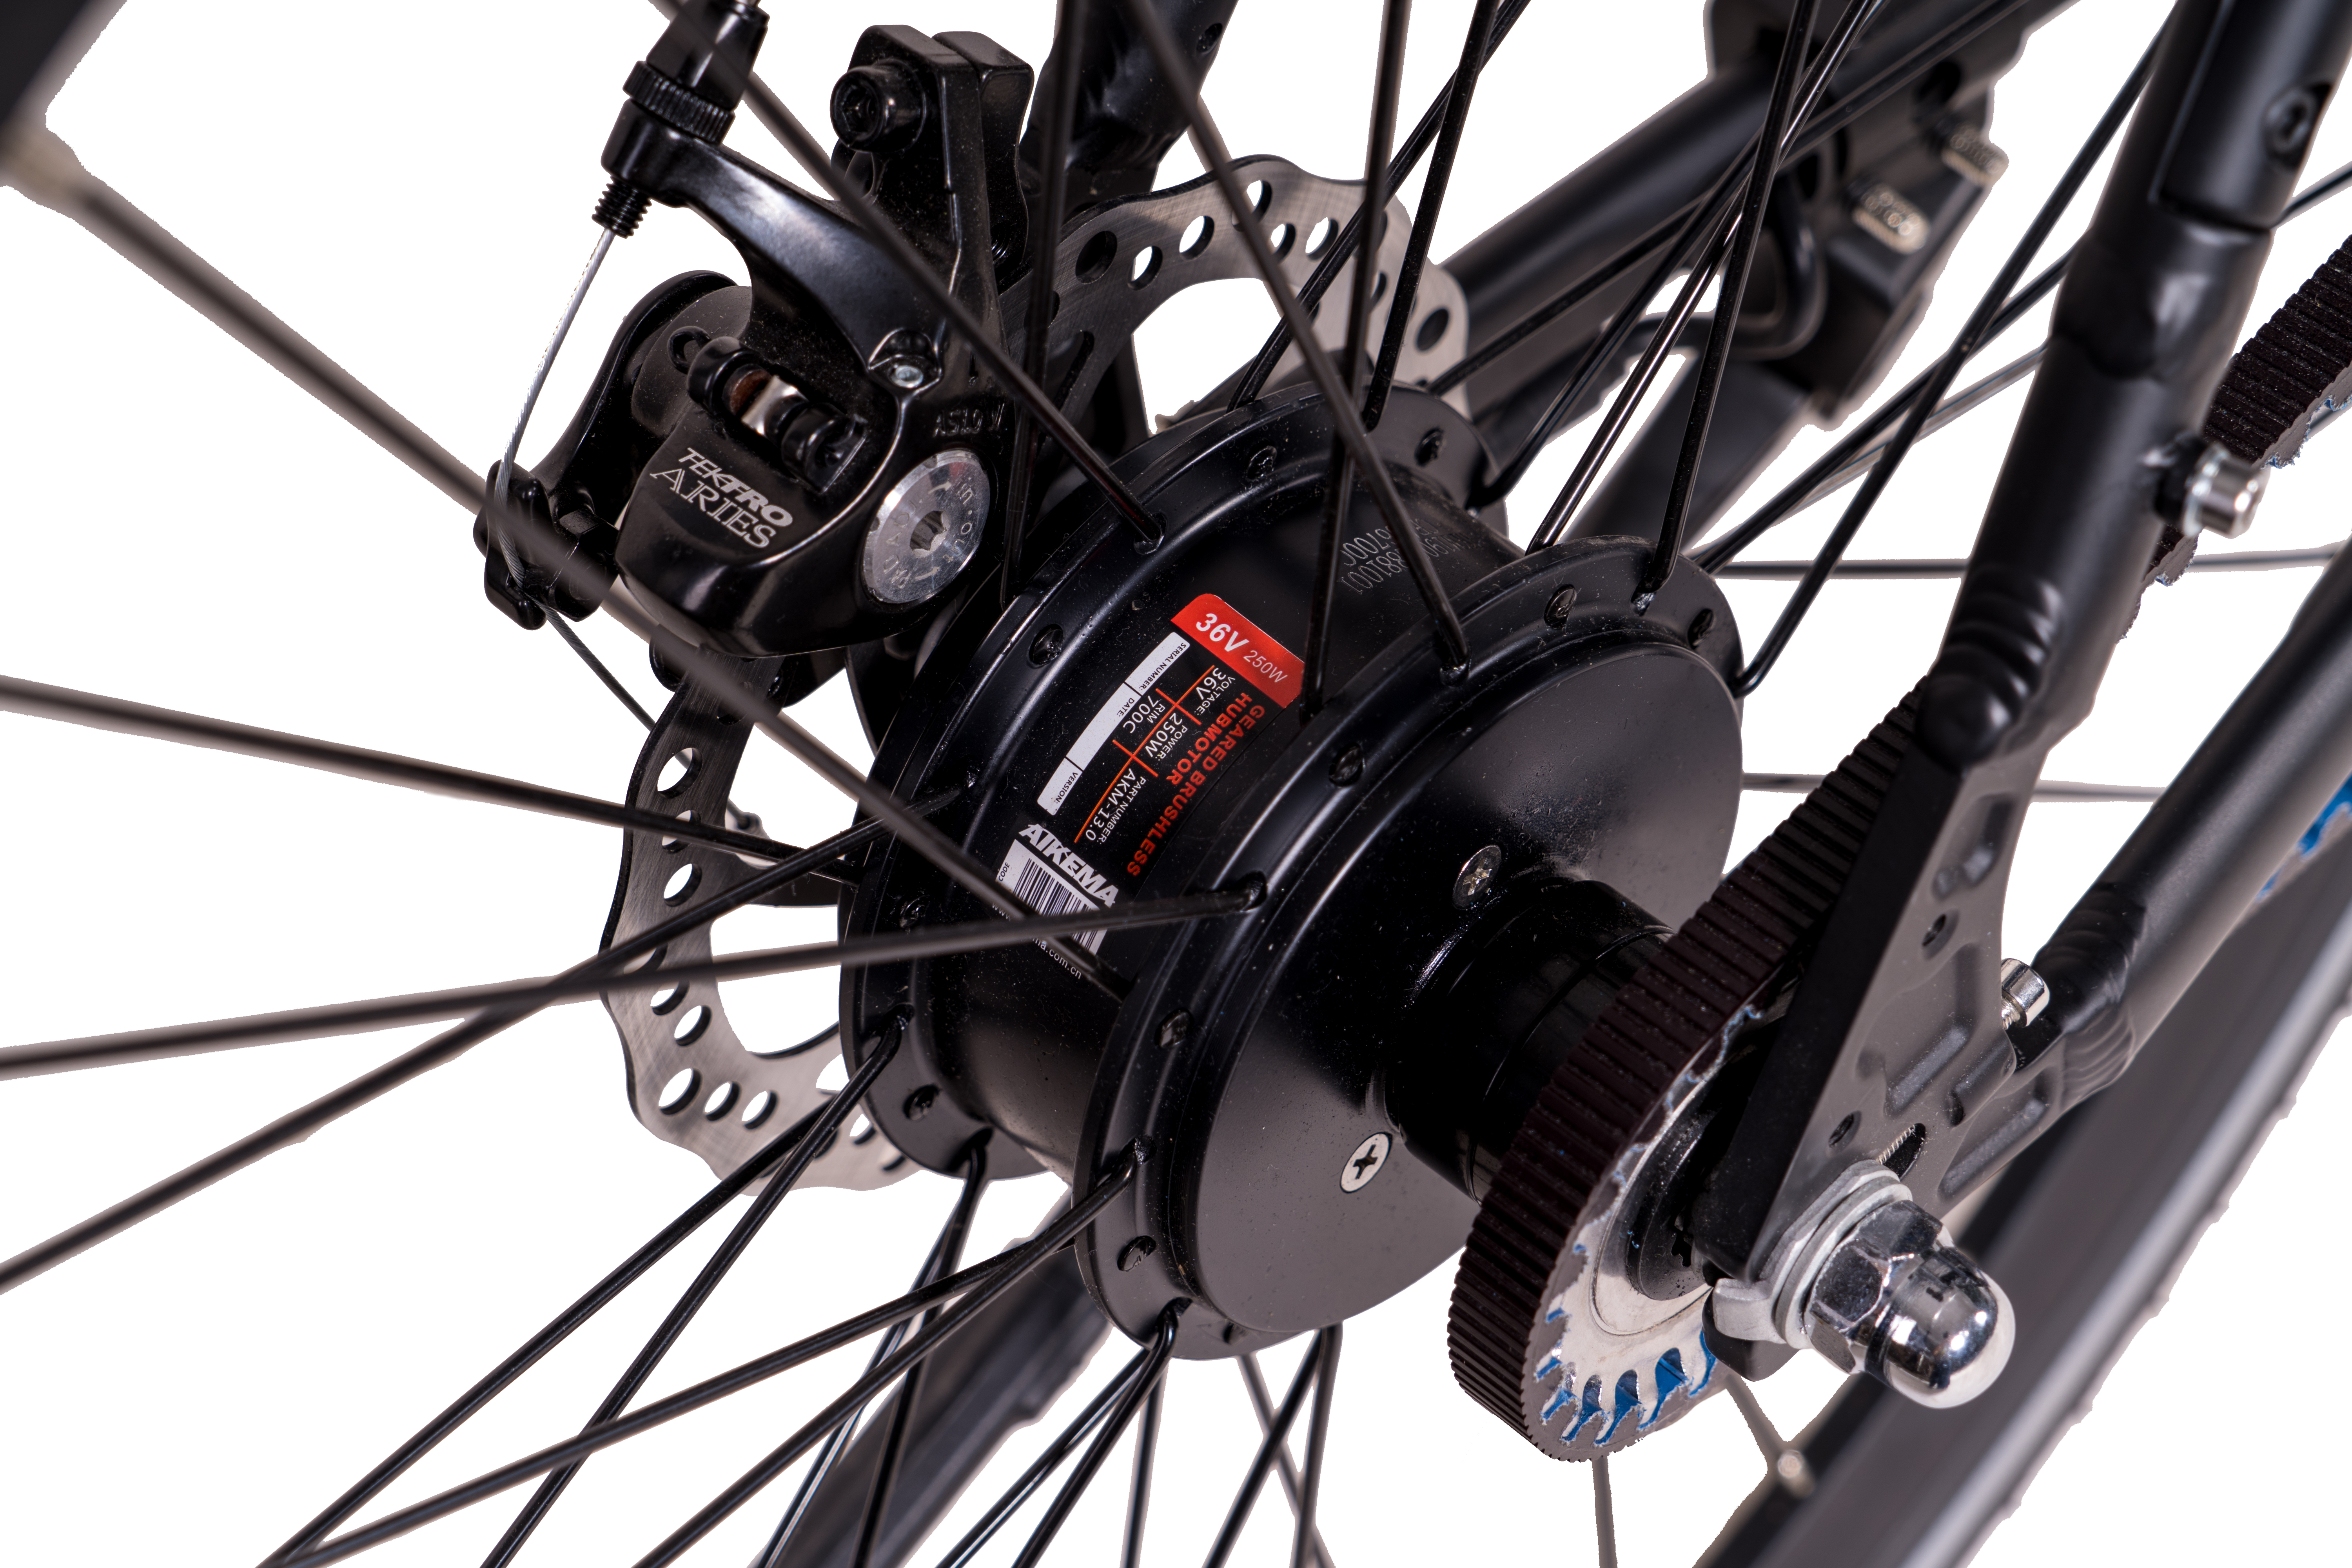 28 367 Urbanbike Riemenantrieb cm, Unisex-Rad, Rahmenhöhe: eOctant schwarz) 52 Wh, (Laufradgröße: Zoll, CHRISSON